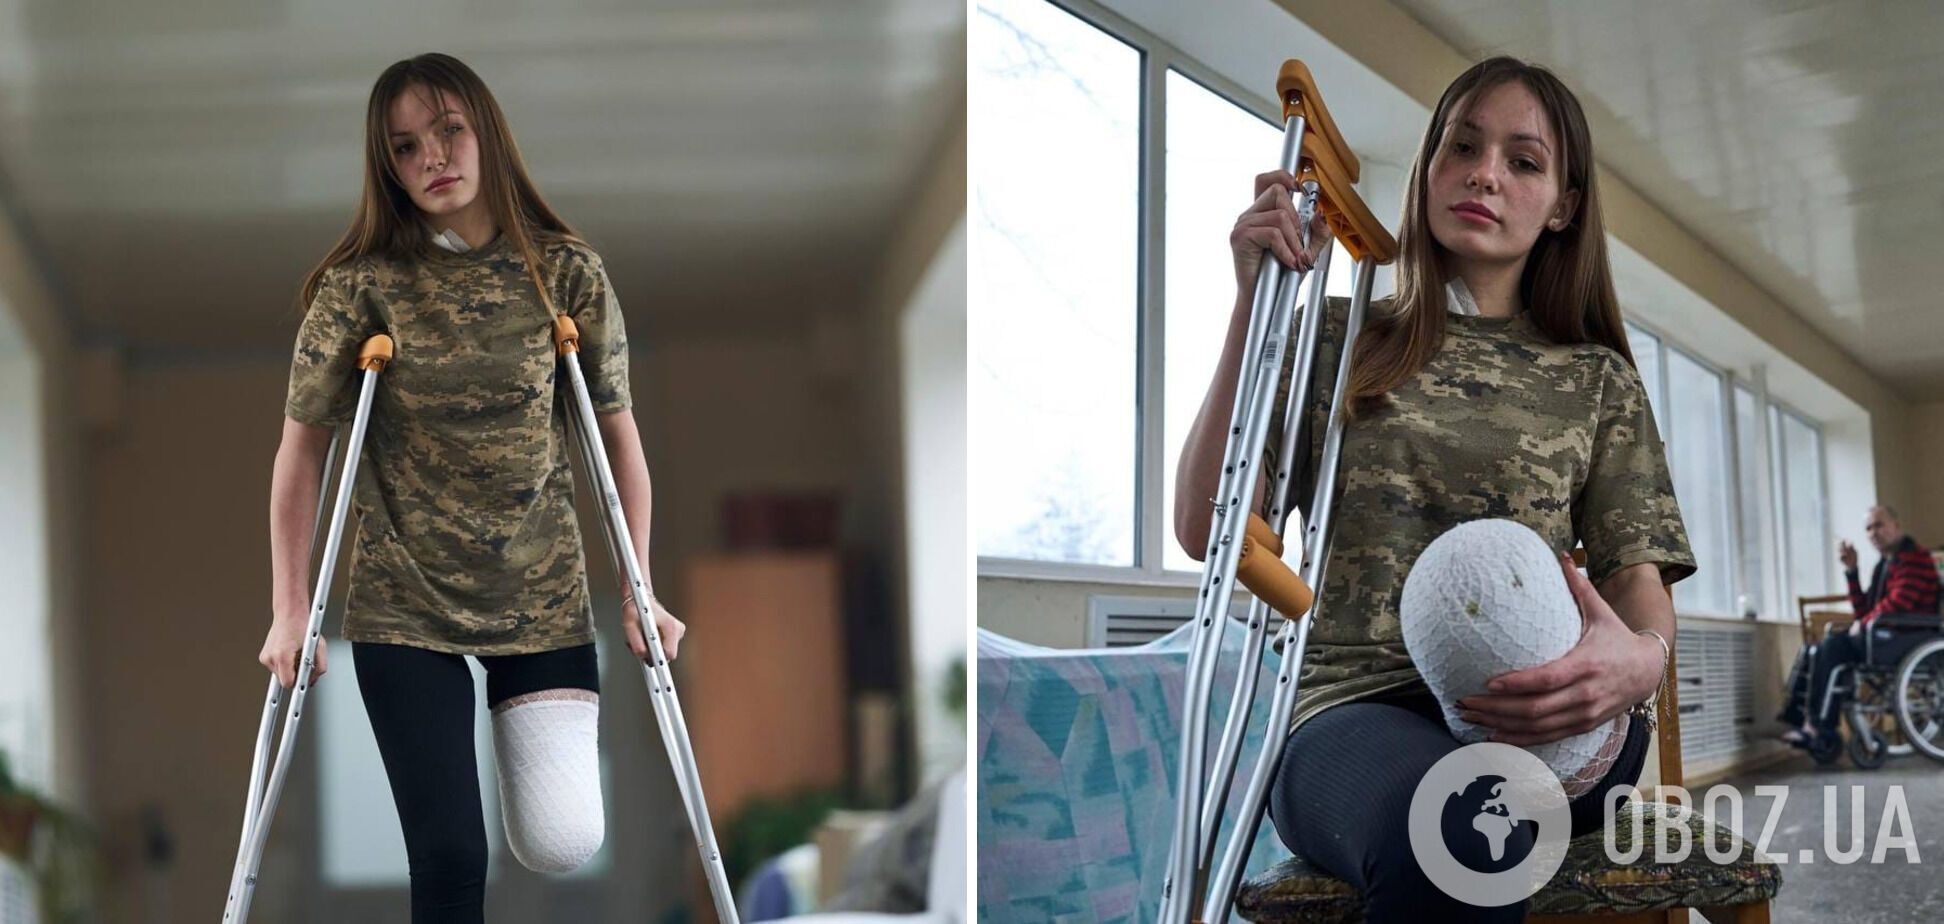 'Стала символом незламності': у мережі розповіли про юну захисницю України, яка втратила ногу на війні, але не здалася